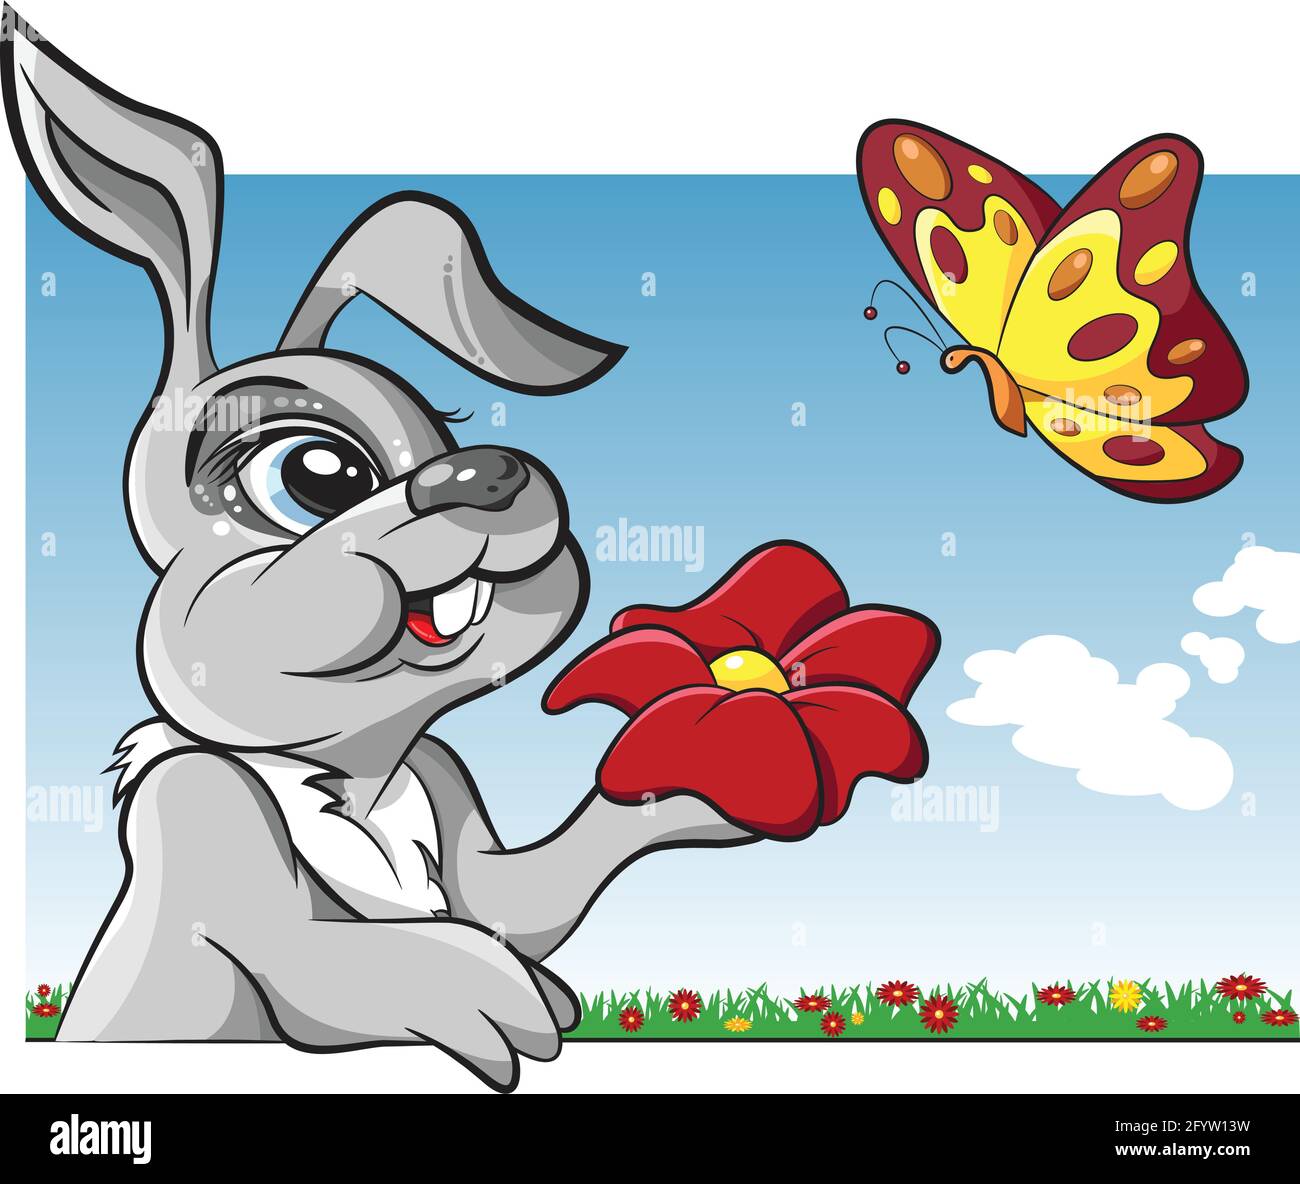 Conejo con una flor en su mano y una mariposa en un prado de flores, ilustración vectorial Ilustración del Vector